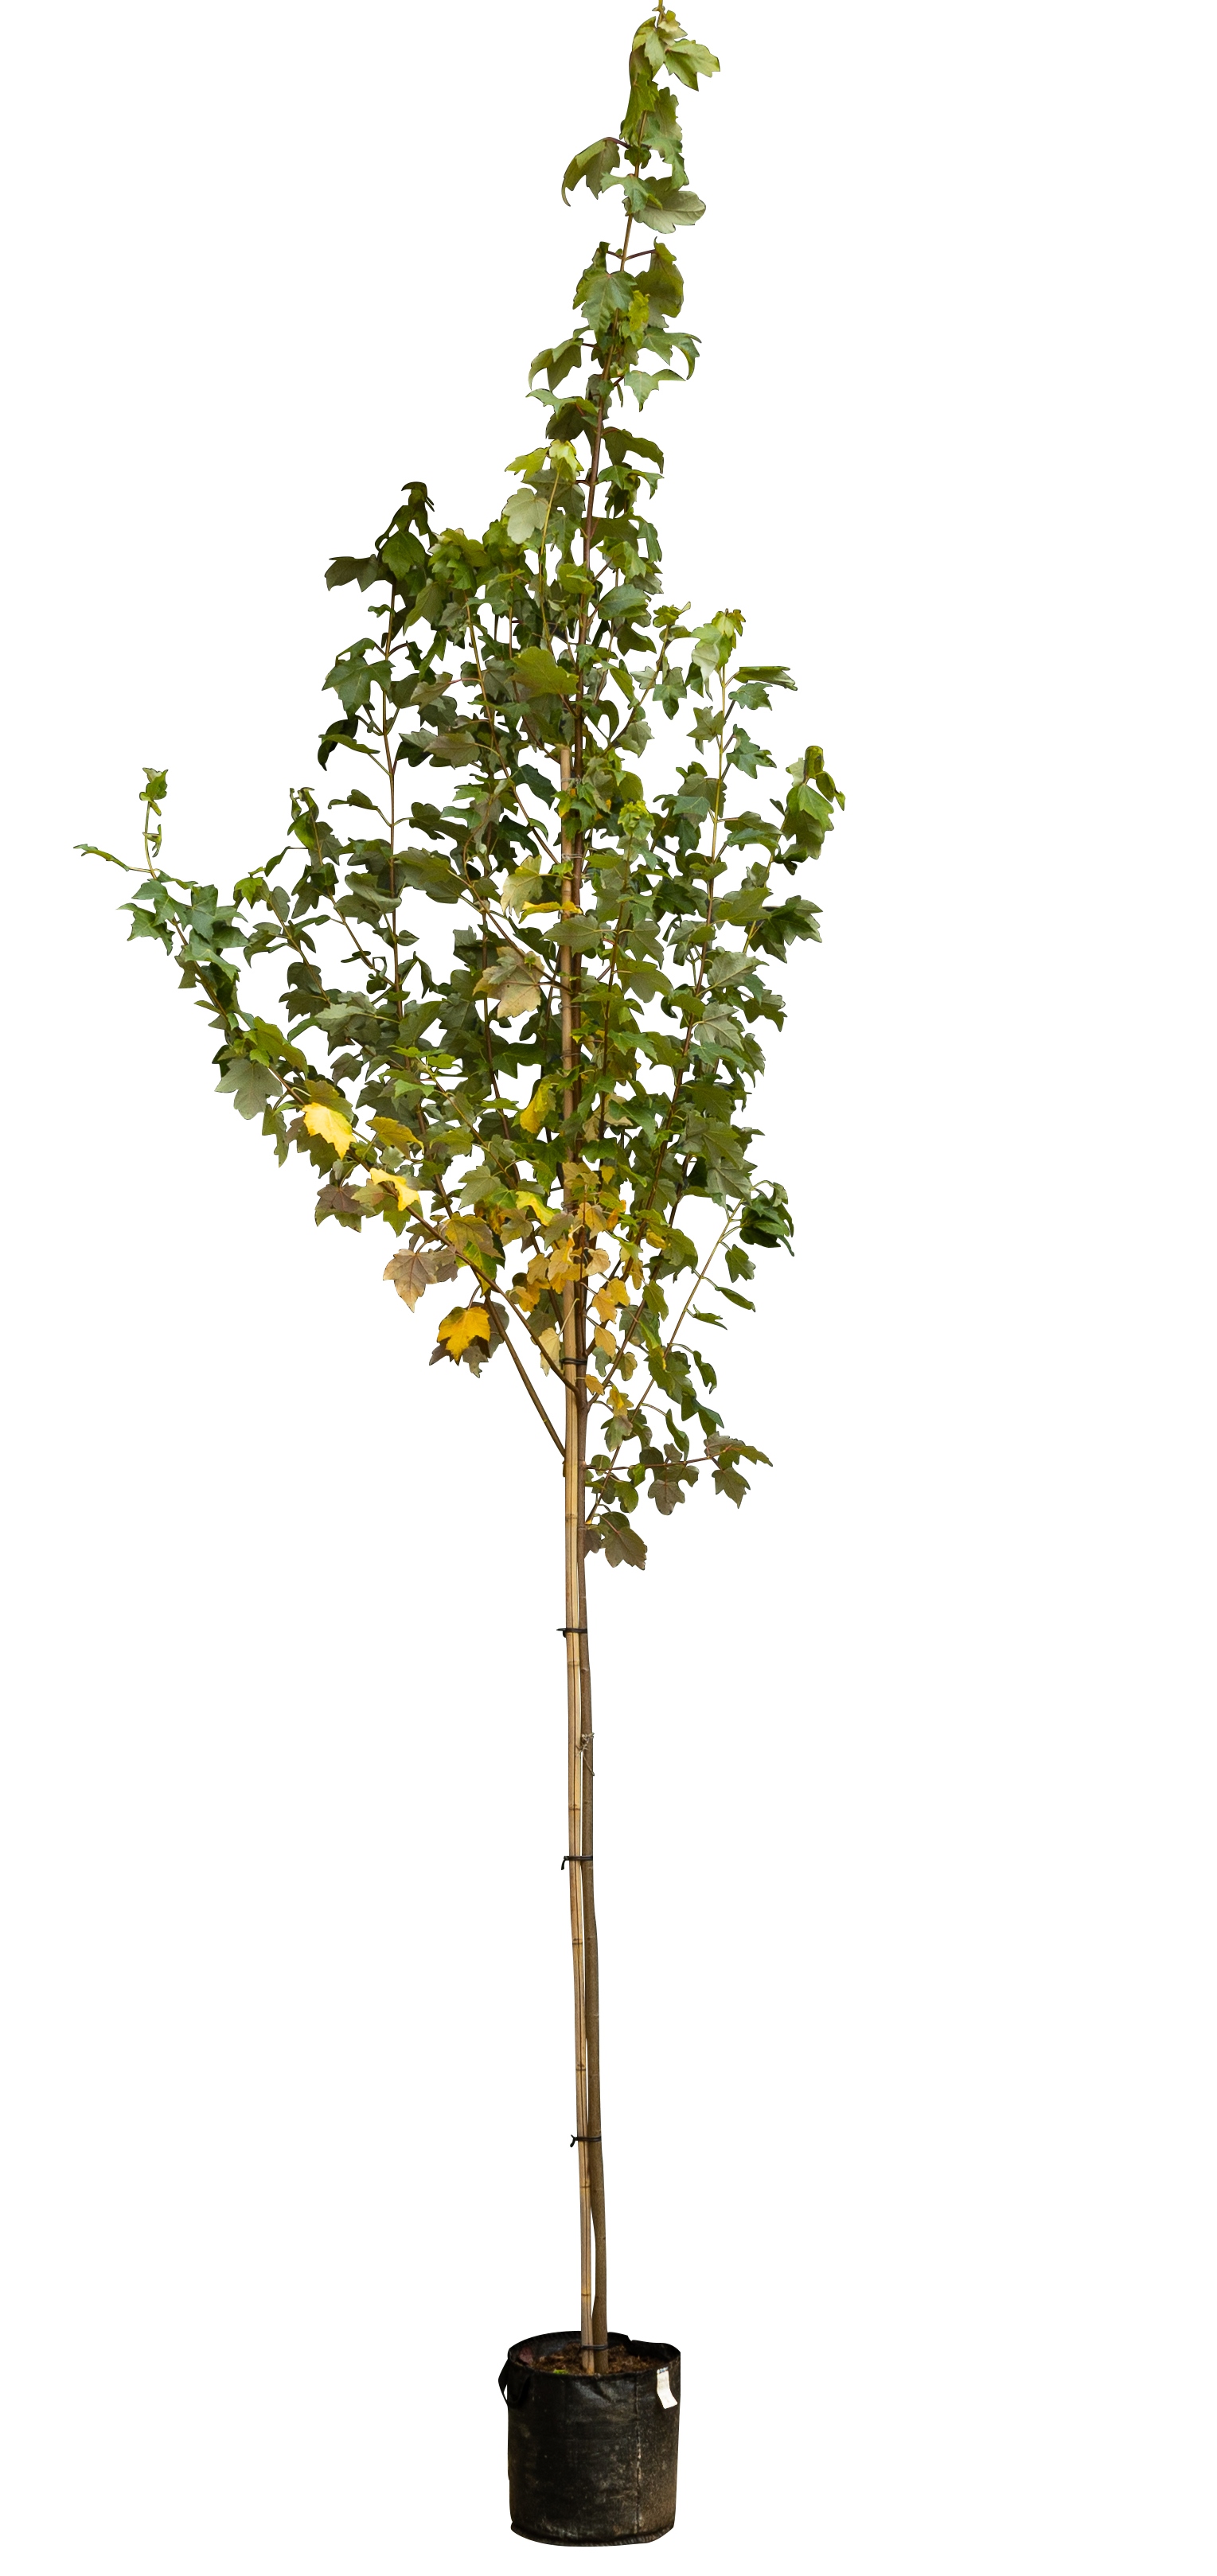 Freeman esdoorn Acer freemanii Autumn Blaze 250 cm - Warentuin Natuurlijk